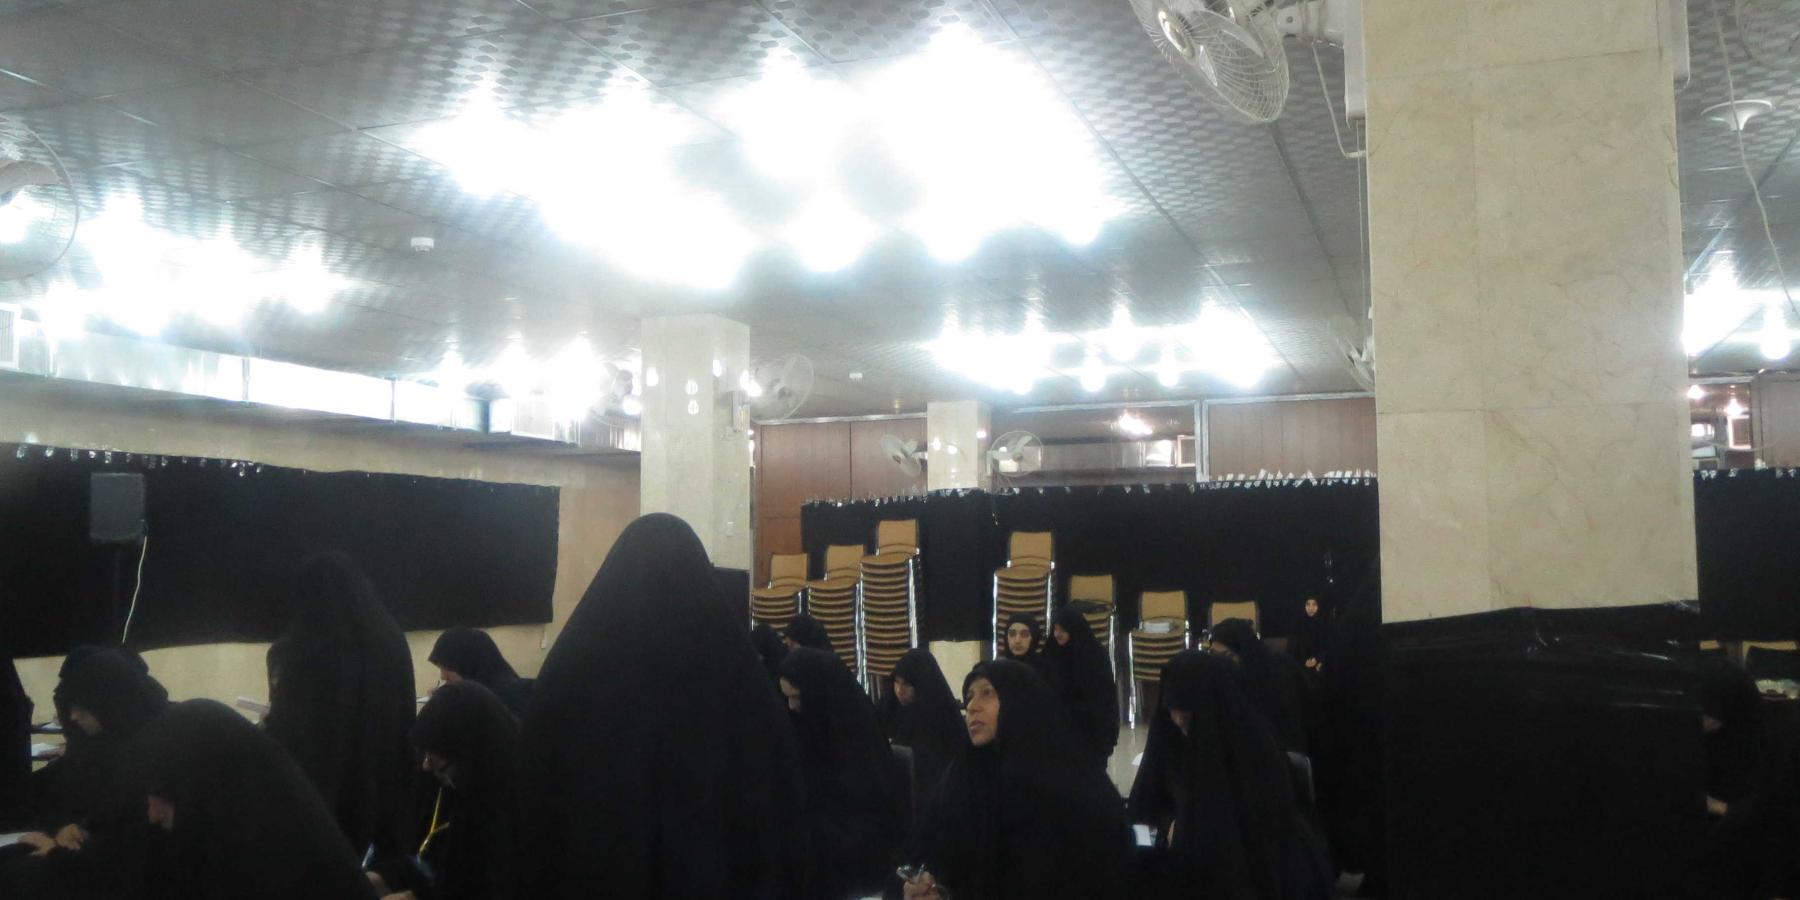 شعبة التعليم الديني النسوي تعد برنامجا ثقافيا لأكثر من 600 متطوعة في العتبة العلوية المقدسة